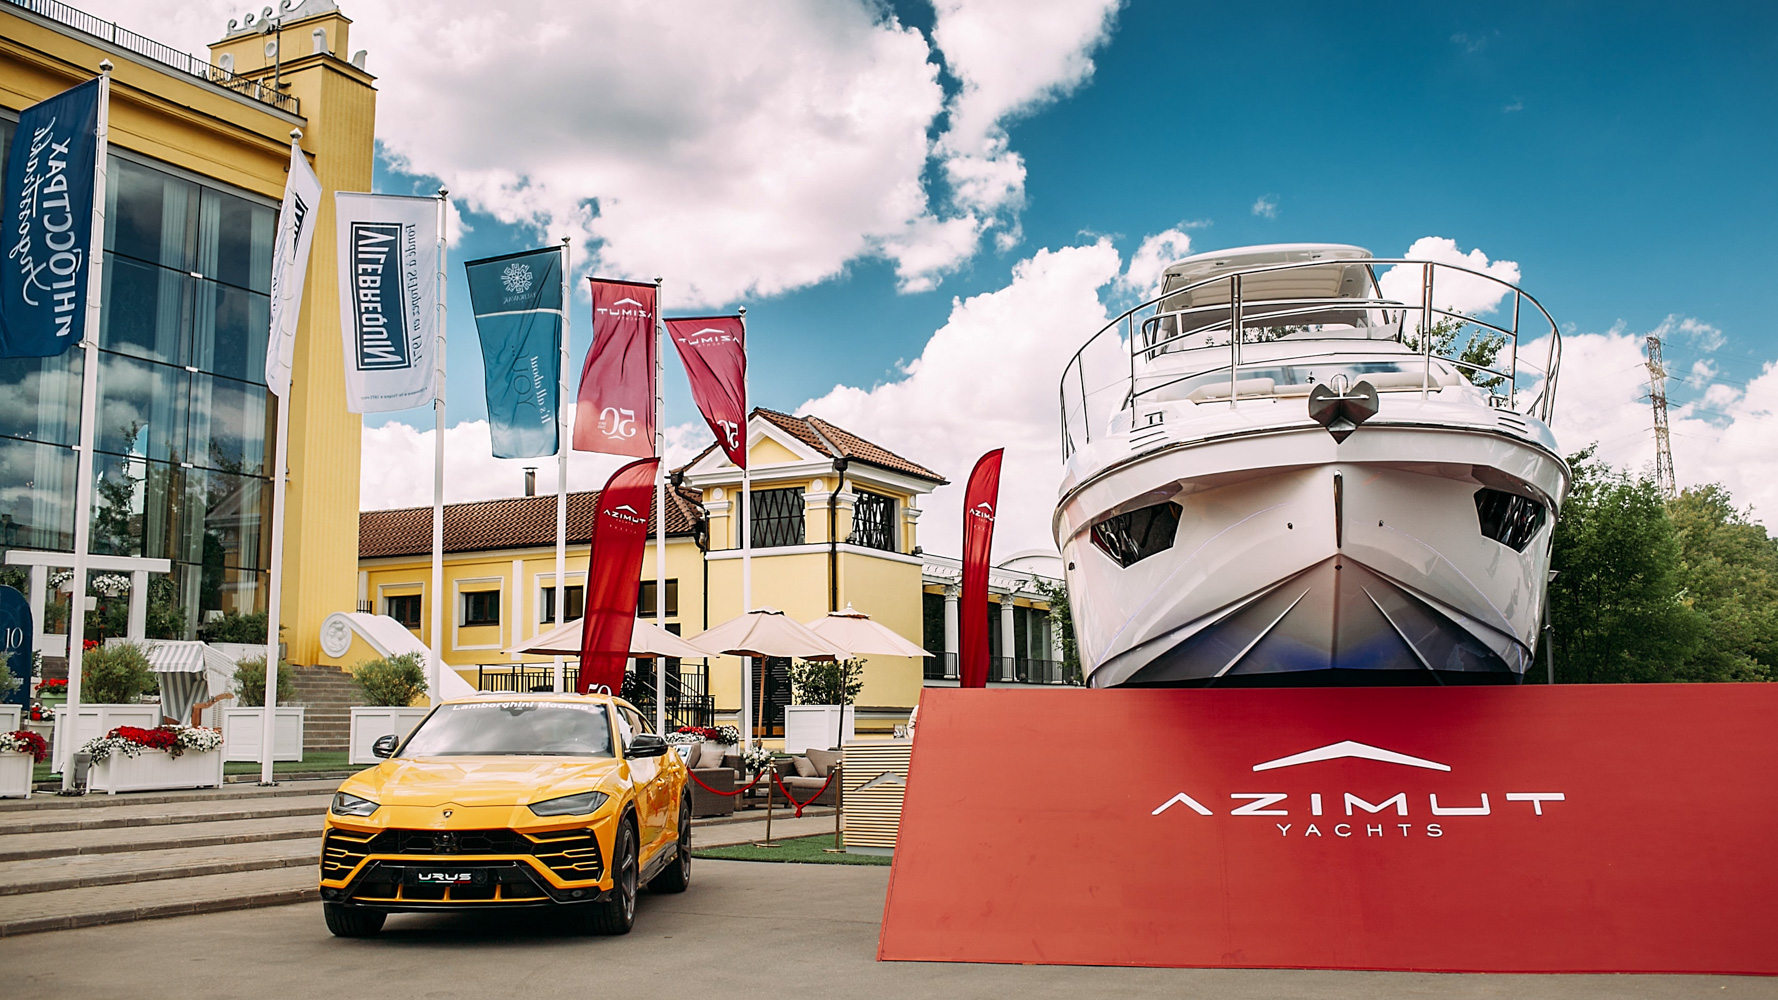 BTL-реклама в местах элитного отдыха, экспонирование автомобилей, недвижимости на яхтенной выставке Moscow Yacht Show